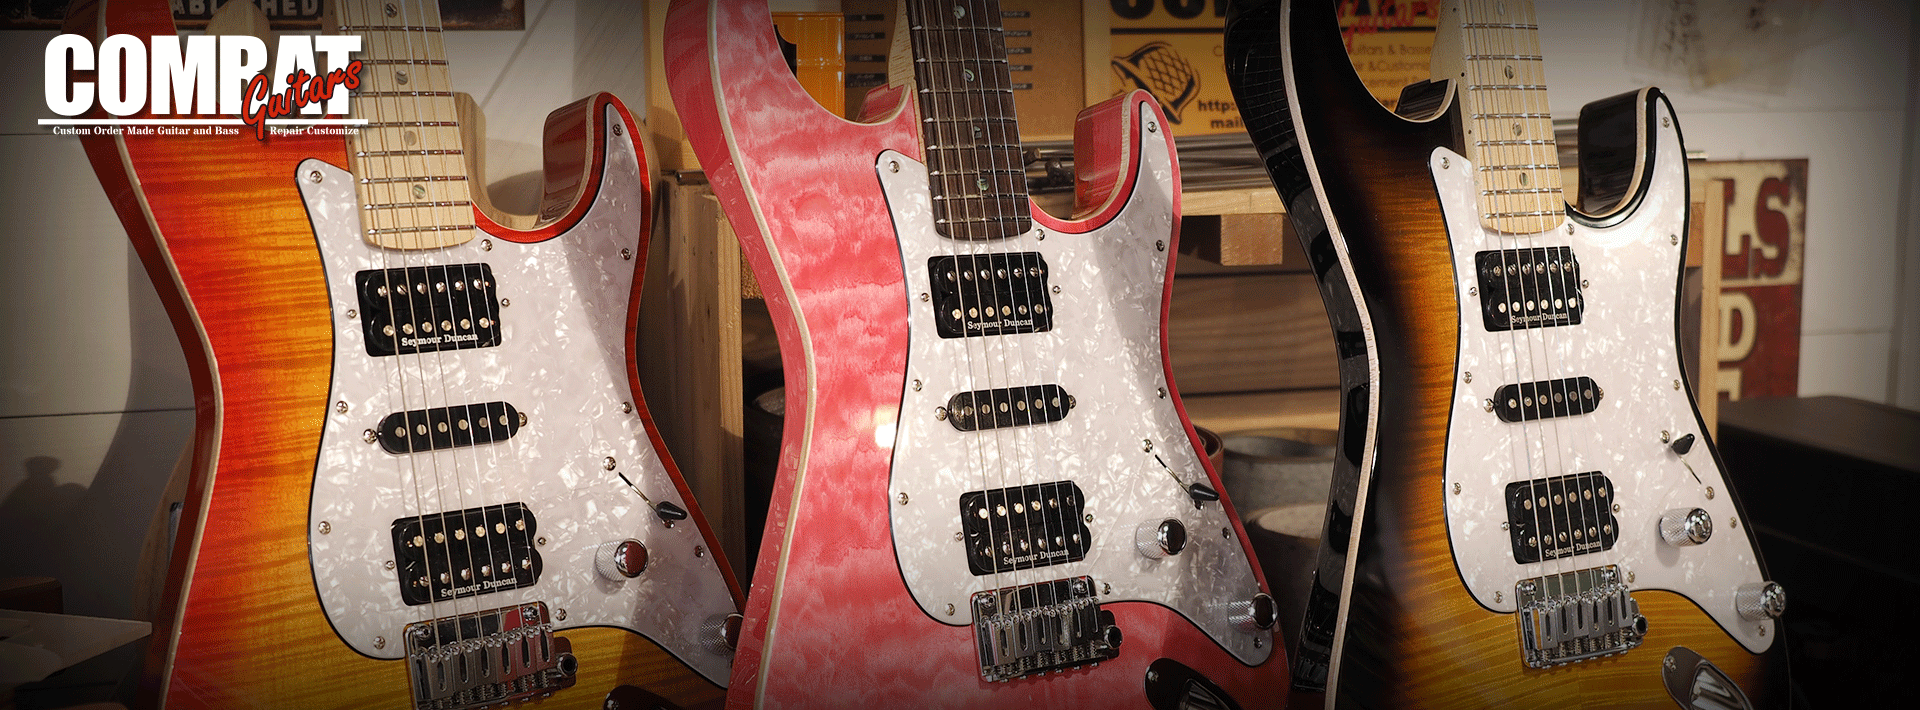 オーダーメイドギター・ベースとギター修理のCOMBAT GUITARS OFFICIAL SITE